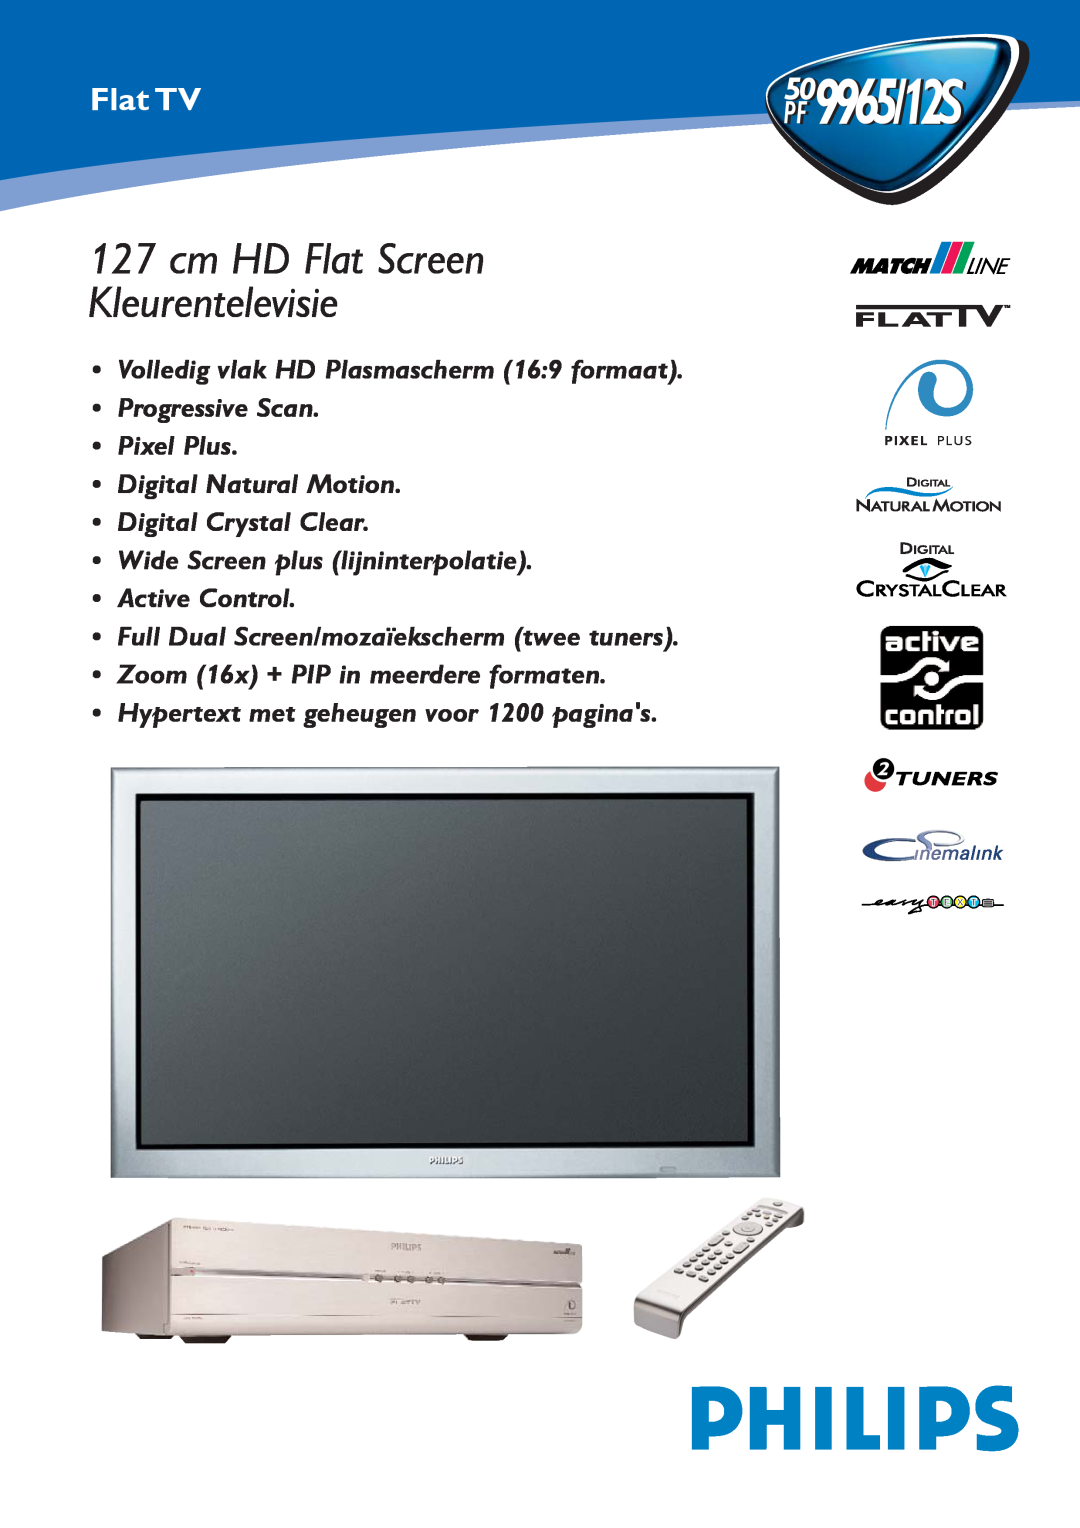 Philips PF 9965/12S manual 509965/12S, cm HD Flat Screen Kleurentelevisie, Flat TV, Zoom 16x + PIP in meerdere formaten 